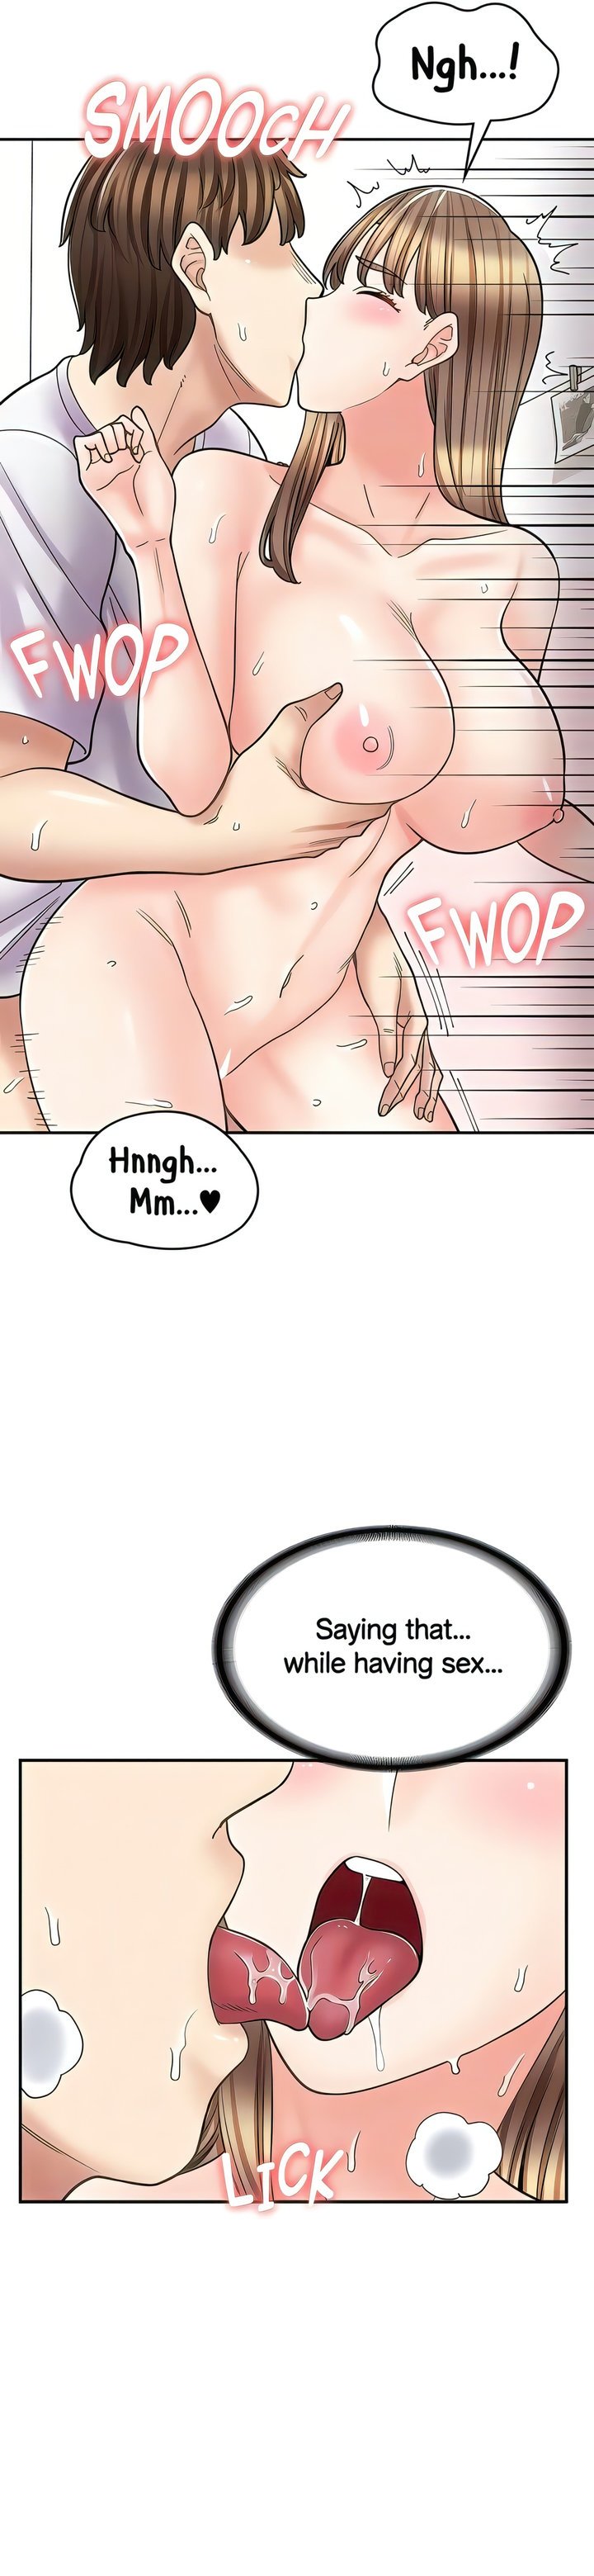 erotic-manga-cafe-girls-chap-38-18